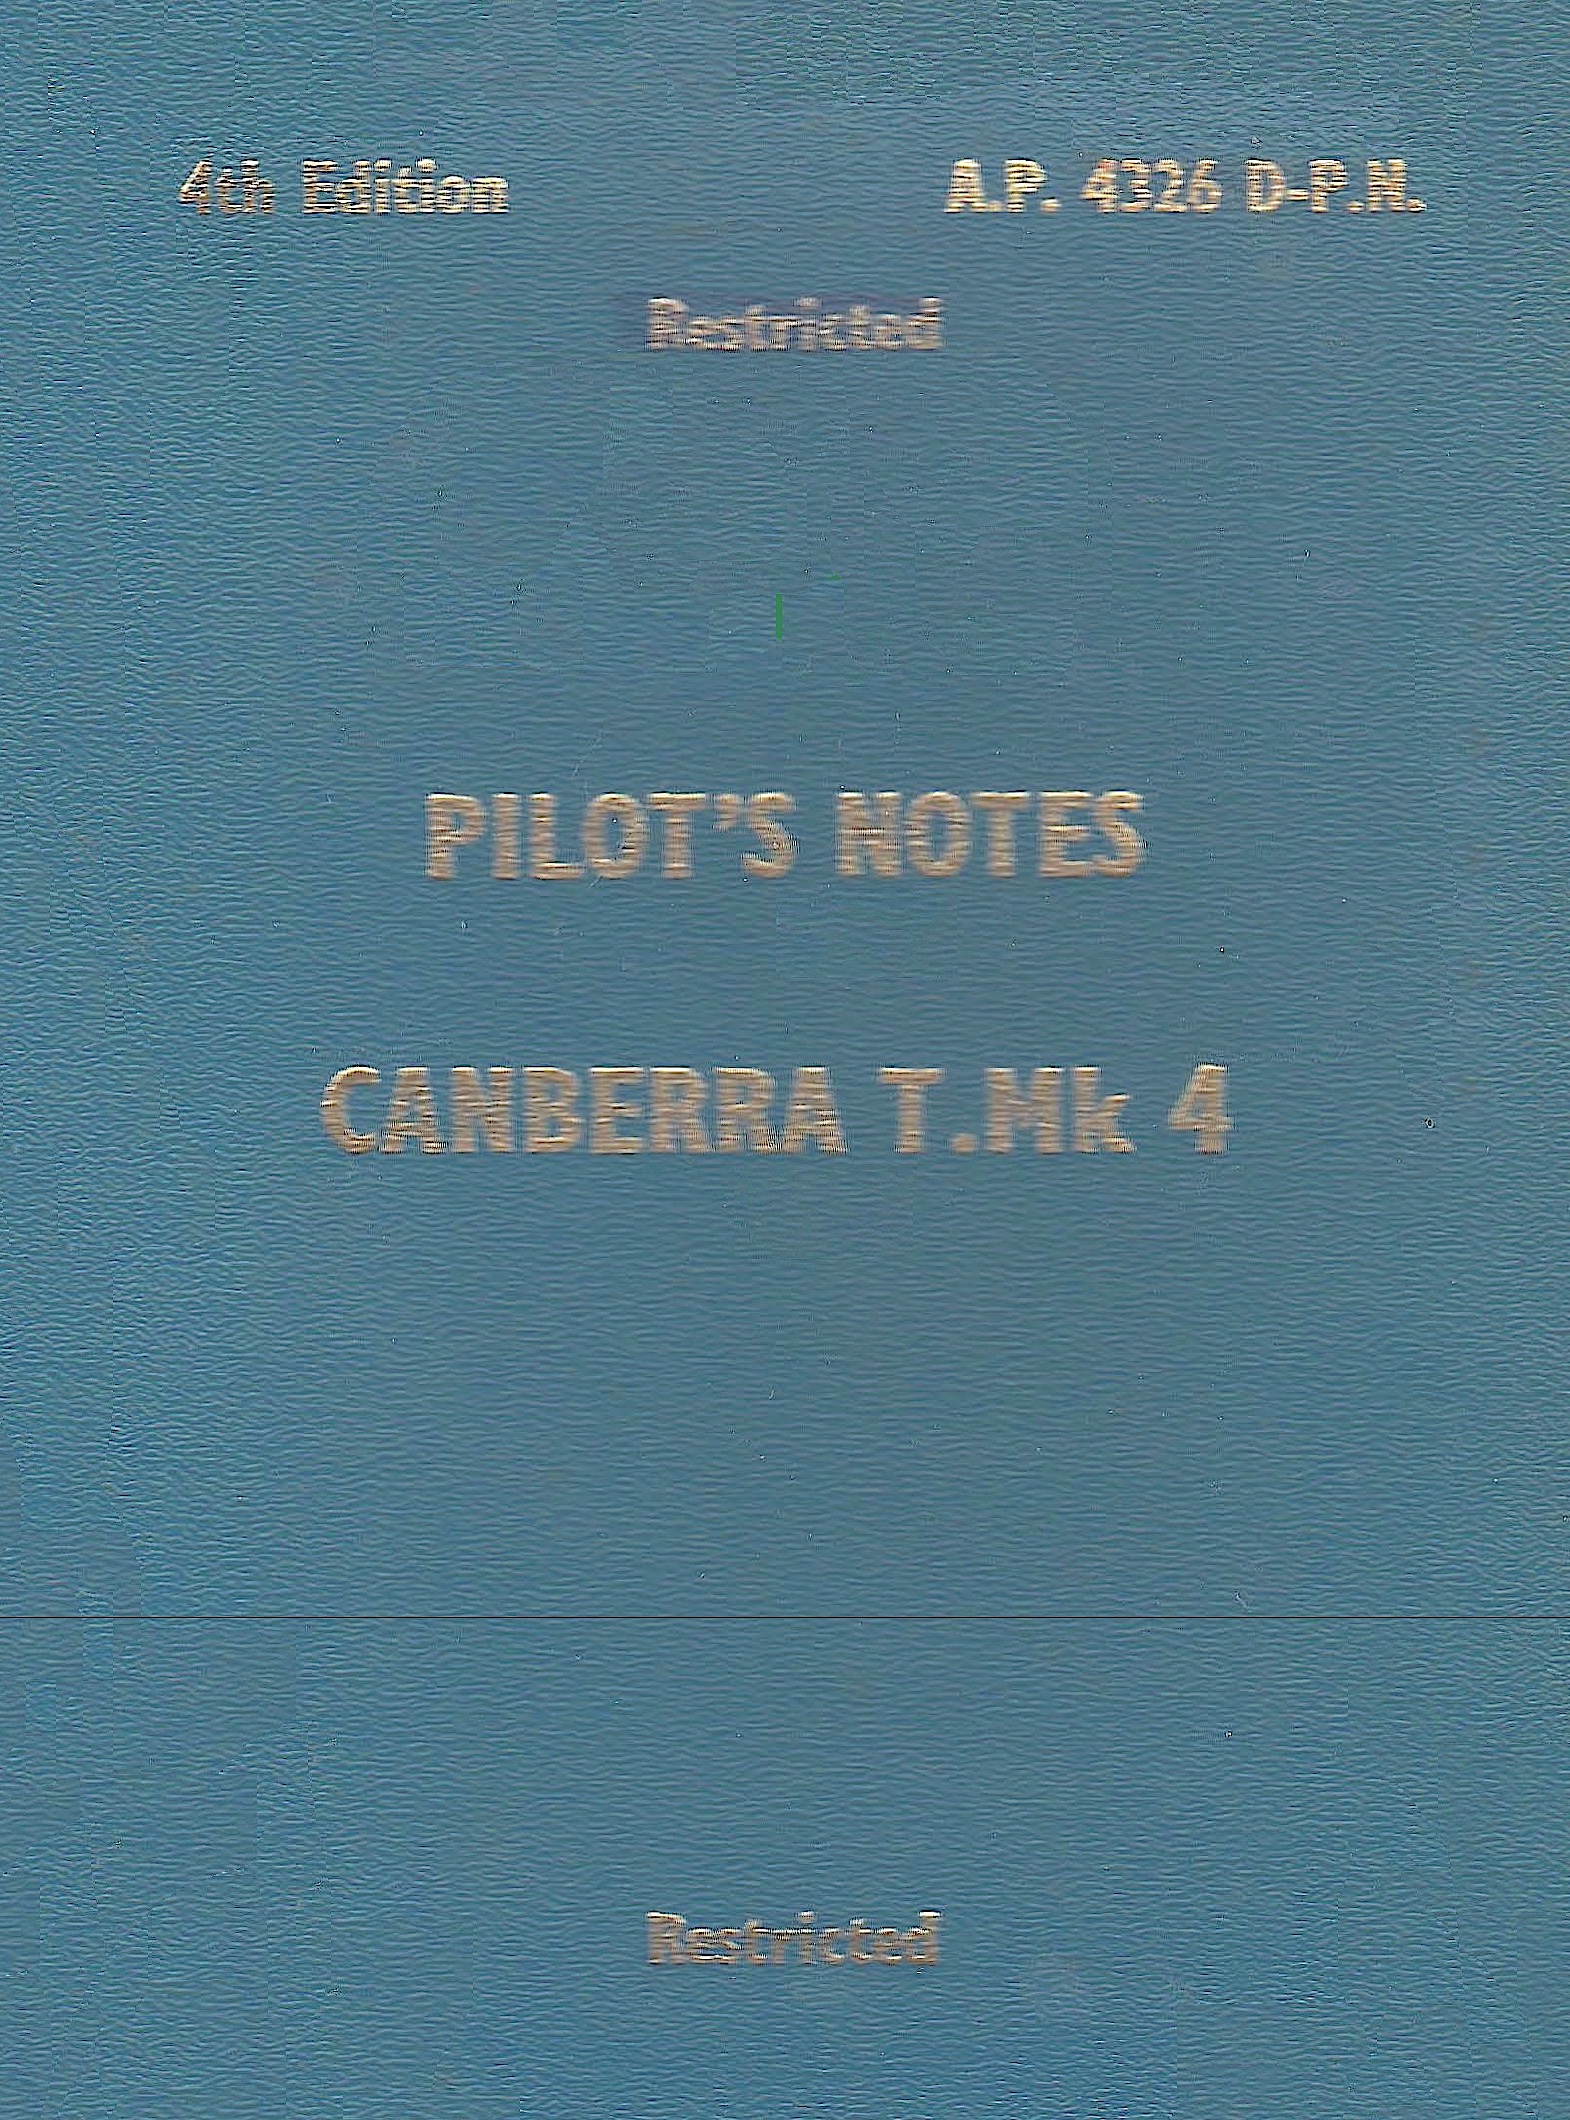 AERONAUTICA GRAN BRETAGNA Eng. Elect. Canberra T Mark 4 1962 Pilot's Notes - <b>DOWNLOAD</b>